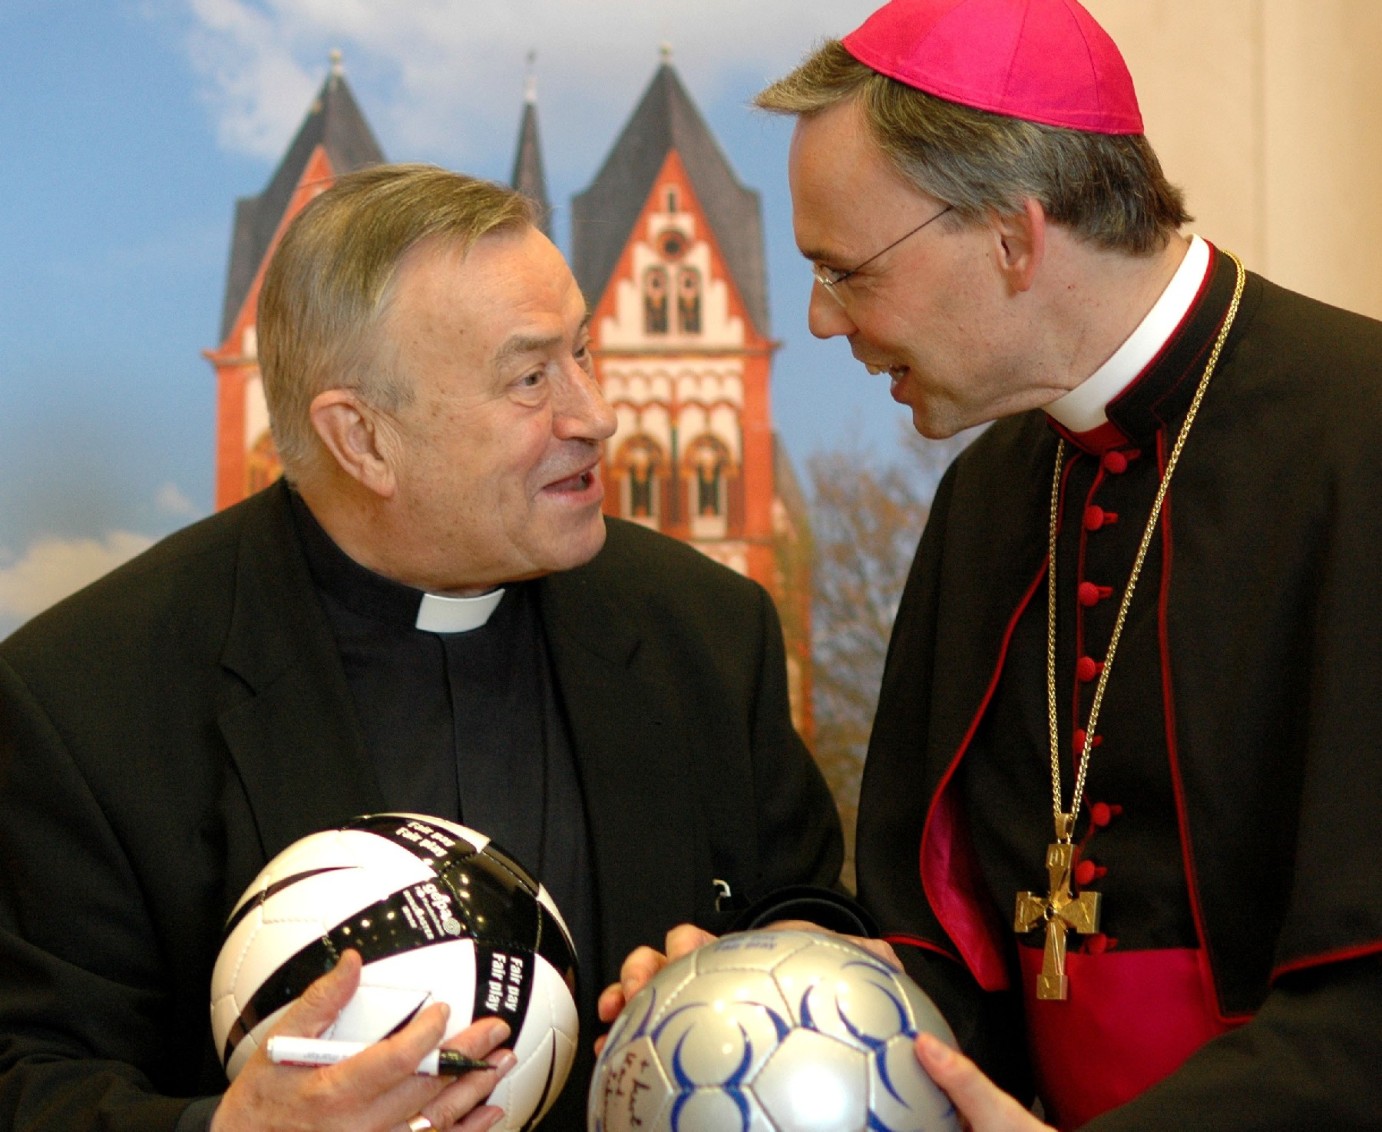 Frankfurt, 20.6.2008: Kardinal Karl Lehmann (l.) und Bischof Franz-Peter Tebartz-van Elst beim Medienempfang der Bistümer Mainz und Limburg zum Thema Fußball. (c) Bistum Limburg